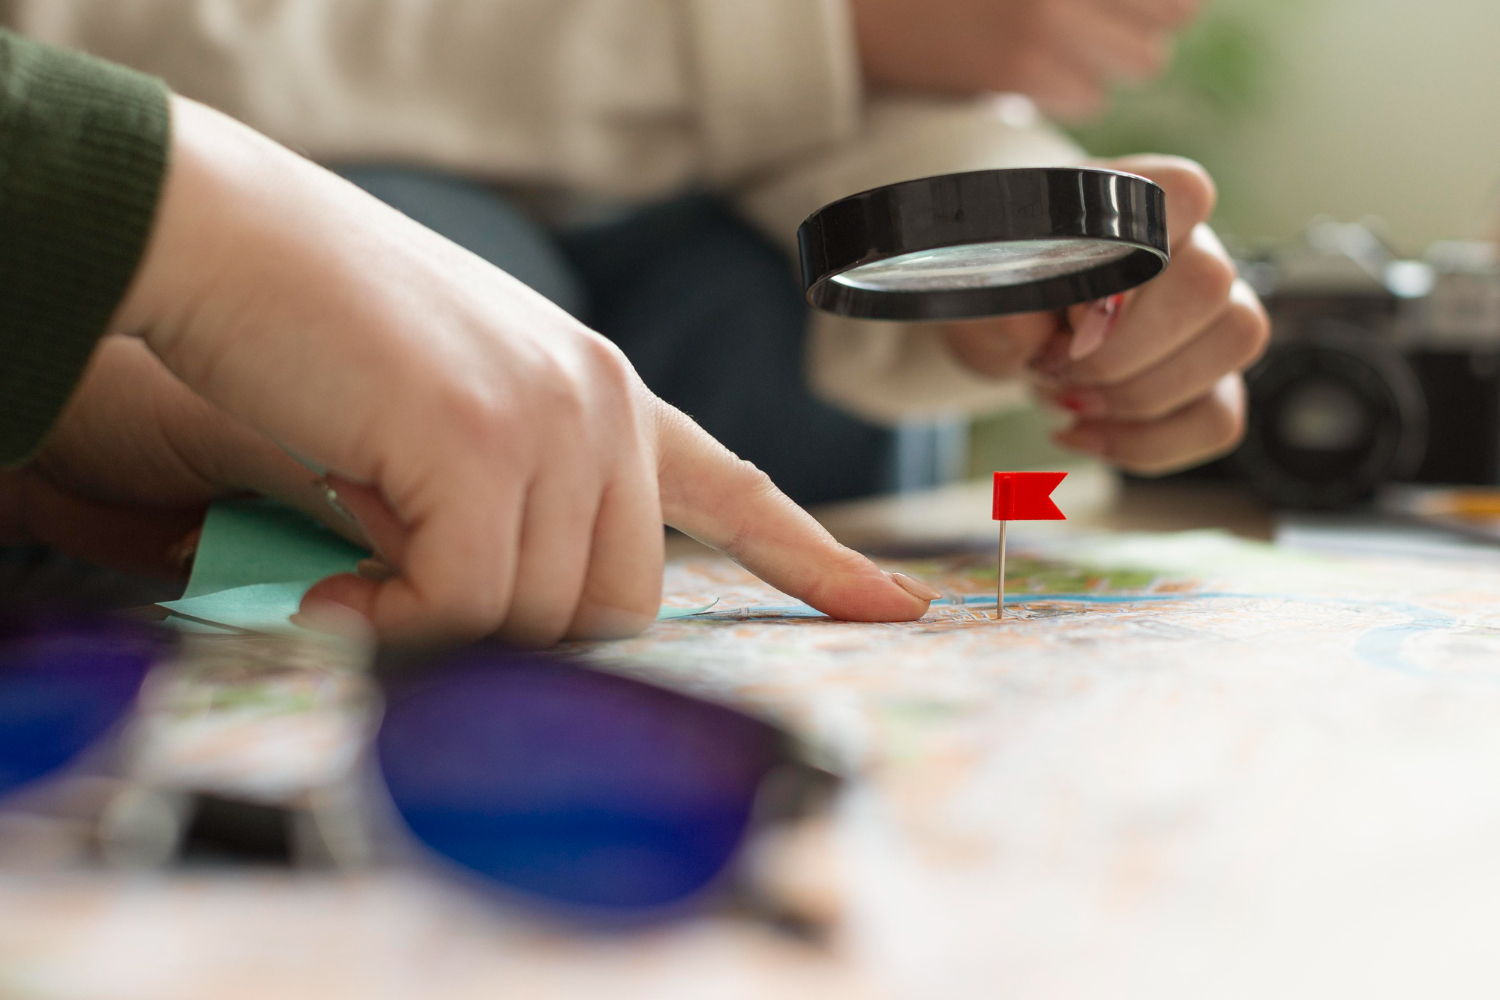 Imagem ilustrativa sobre SEO local mostrando pessoas buscando um ponto específico no mapa com uma lupa.